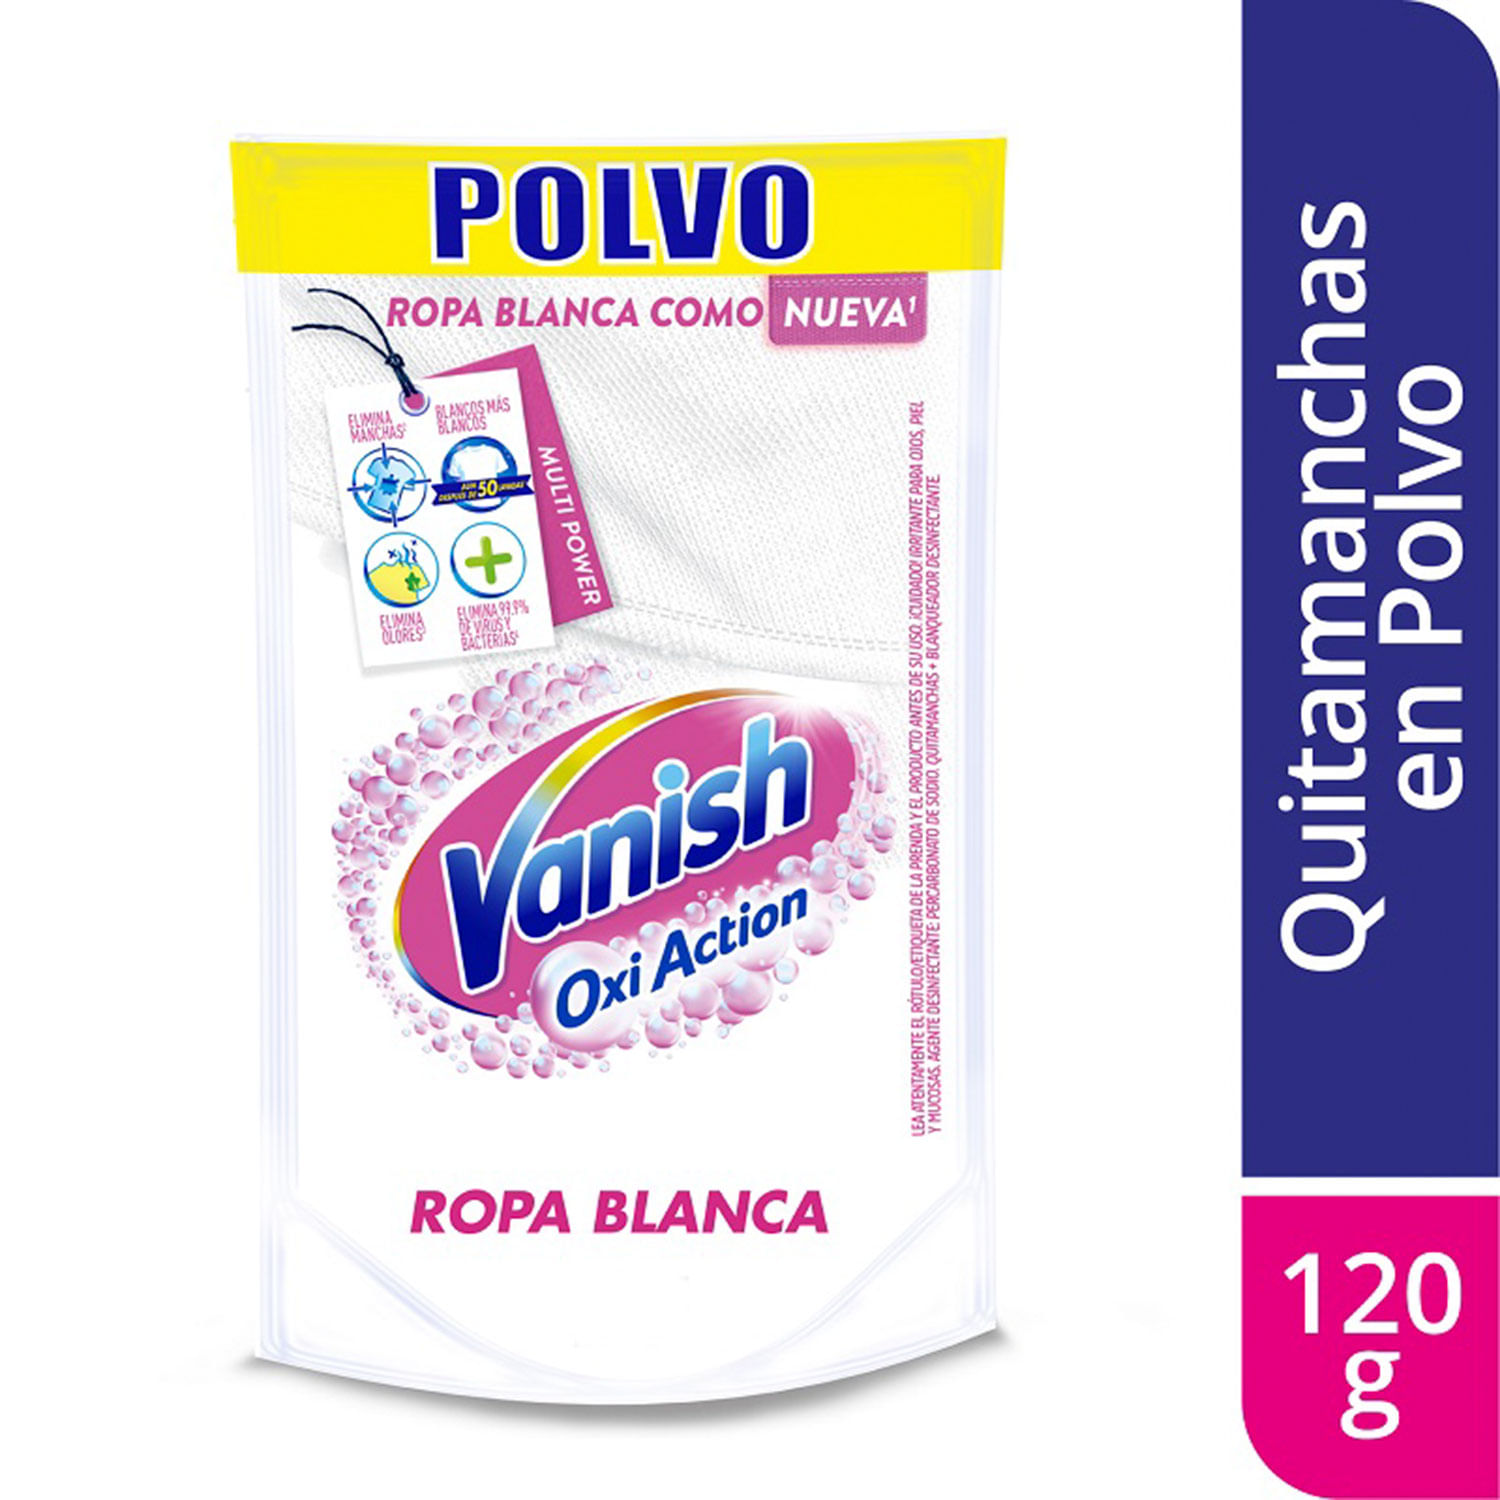 Quitamanchas Vanish Polvo White 120 g | Jumbo.cl